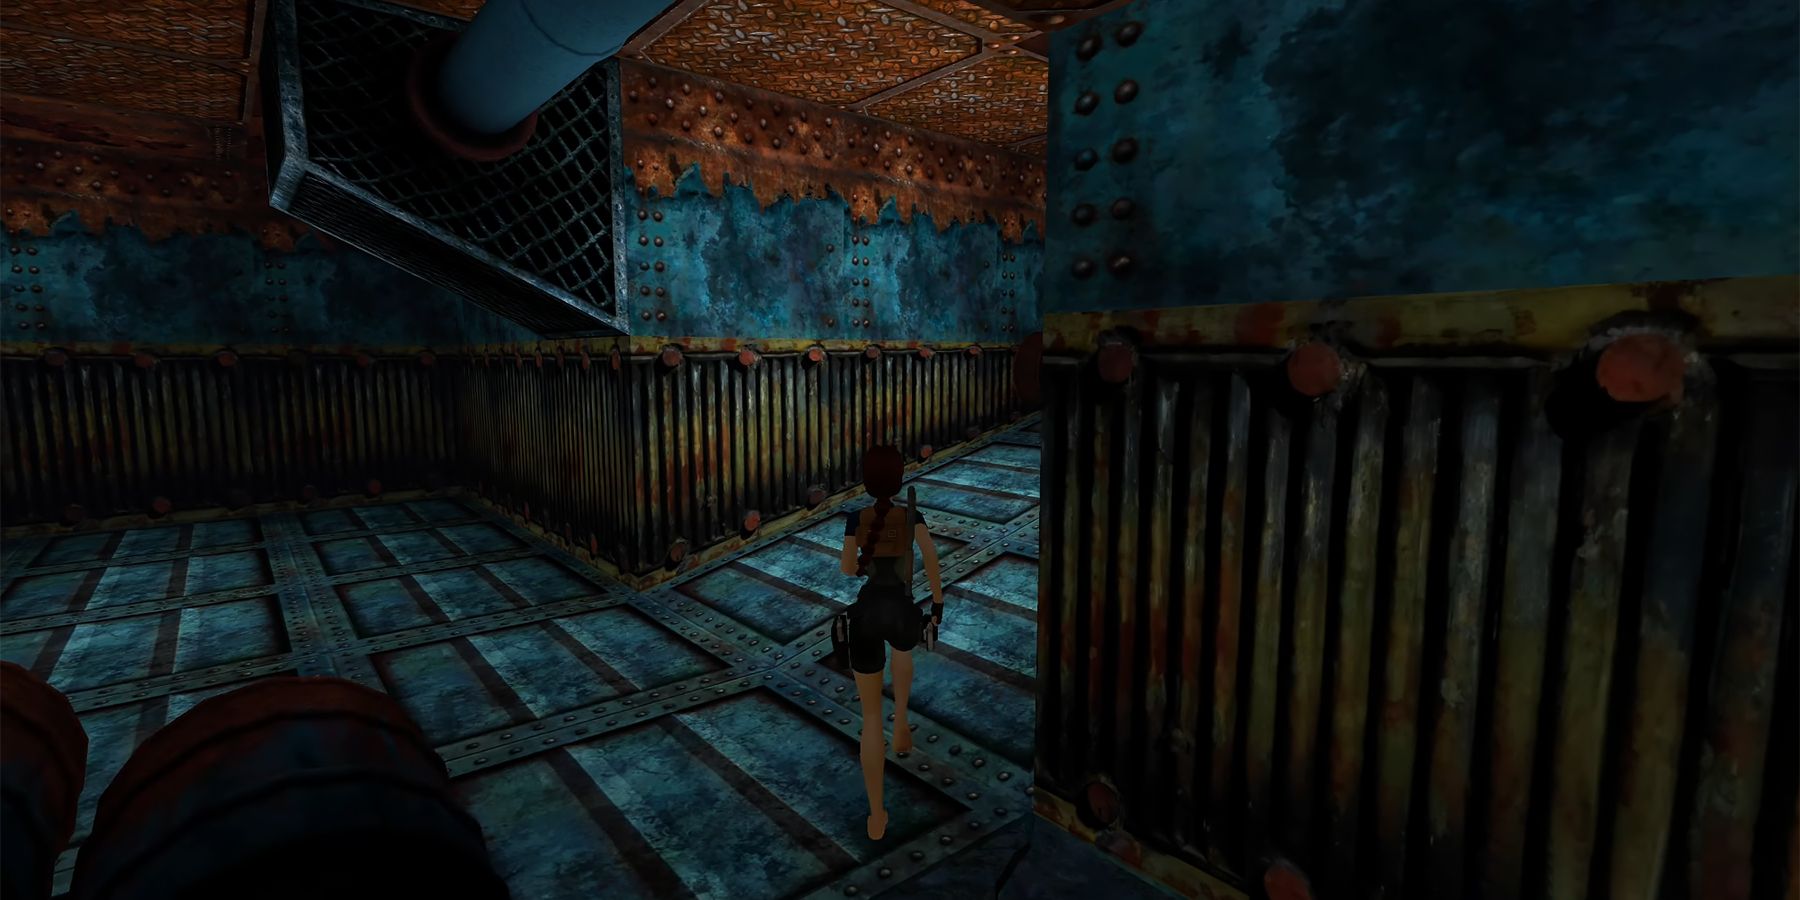 Tomb Raider 1-3 Remastered Review (PS5) - Long Live Lara - Finger Guns